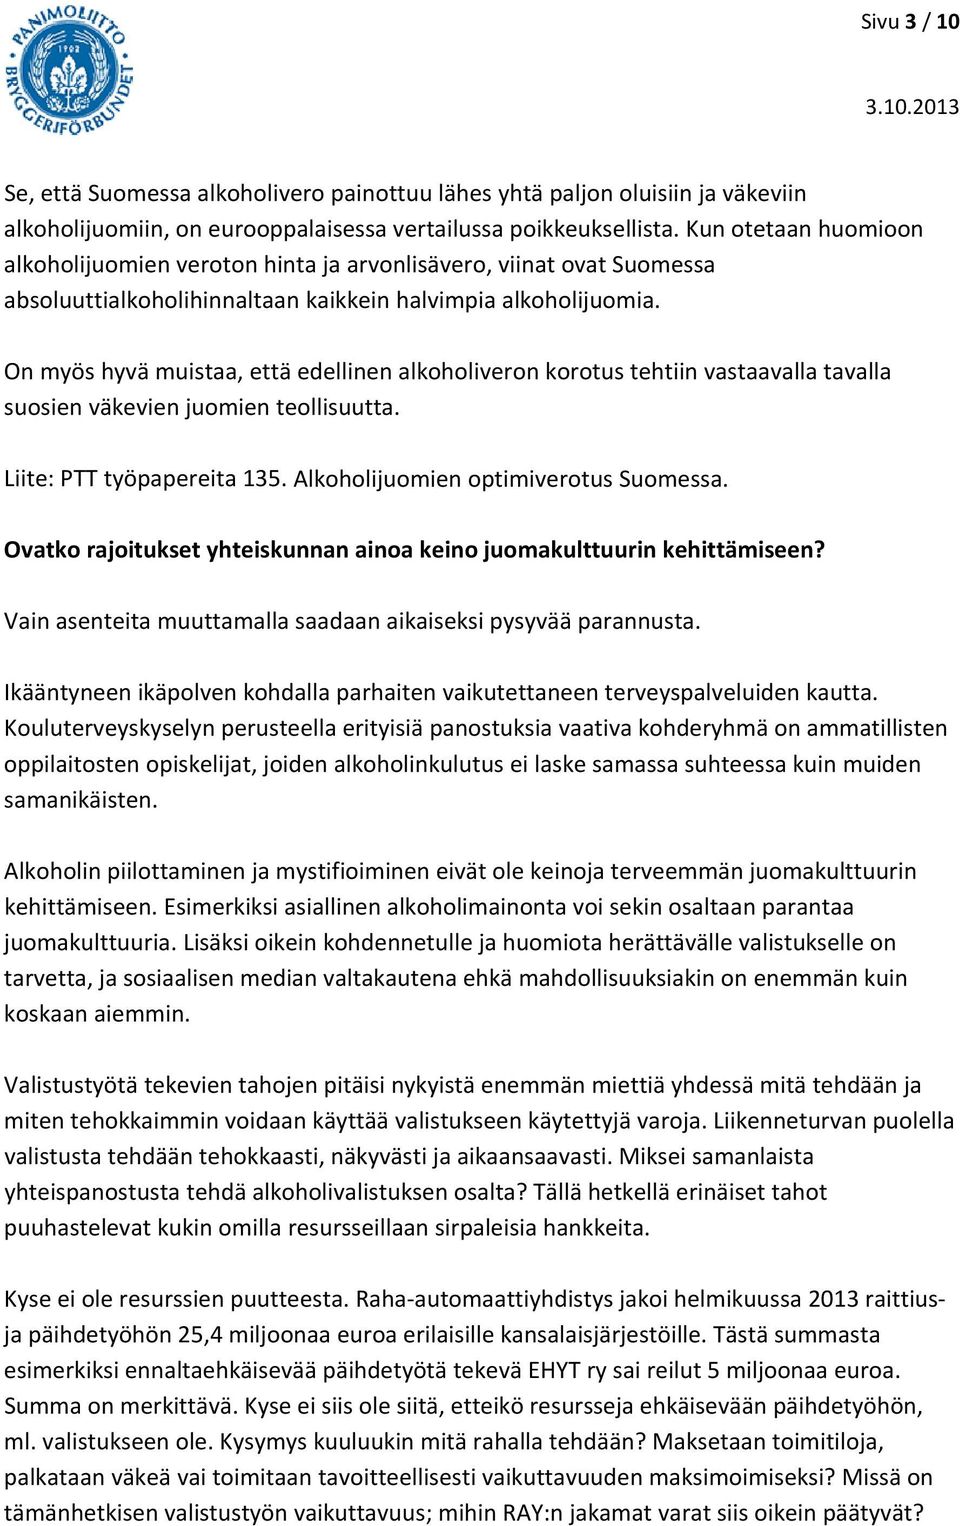 On myös hyvä muistaa, että edellinen alkoholiveron korotus tehtiin vastaavalla tavalla suosien väkevien juomien teollisuutta. Liite: PTT työpapereita 135. Alkoholijuomien optimiverotus Suomessa.